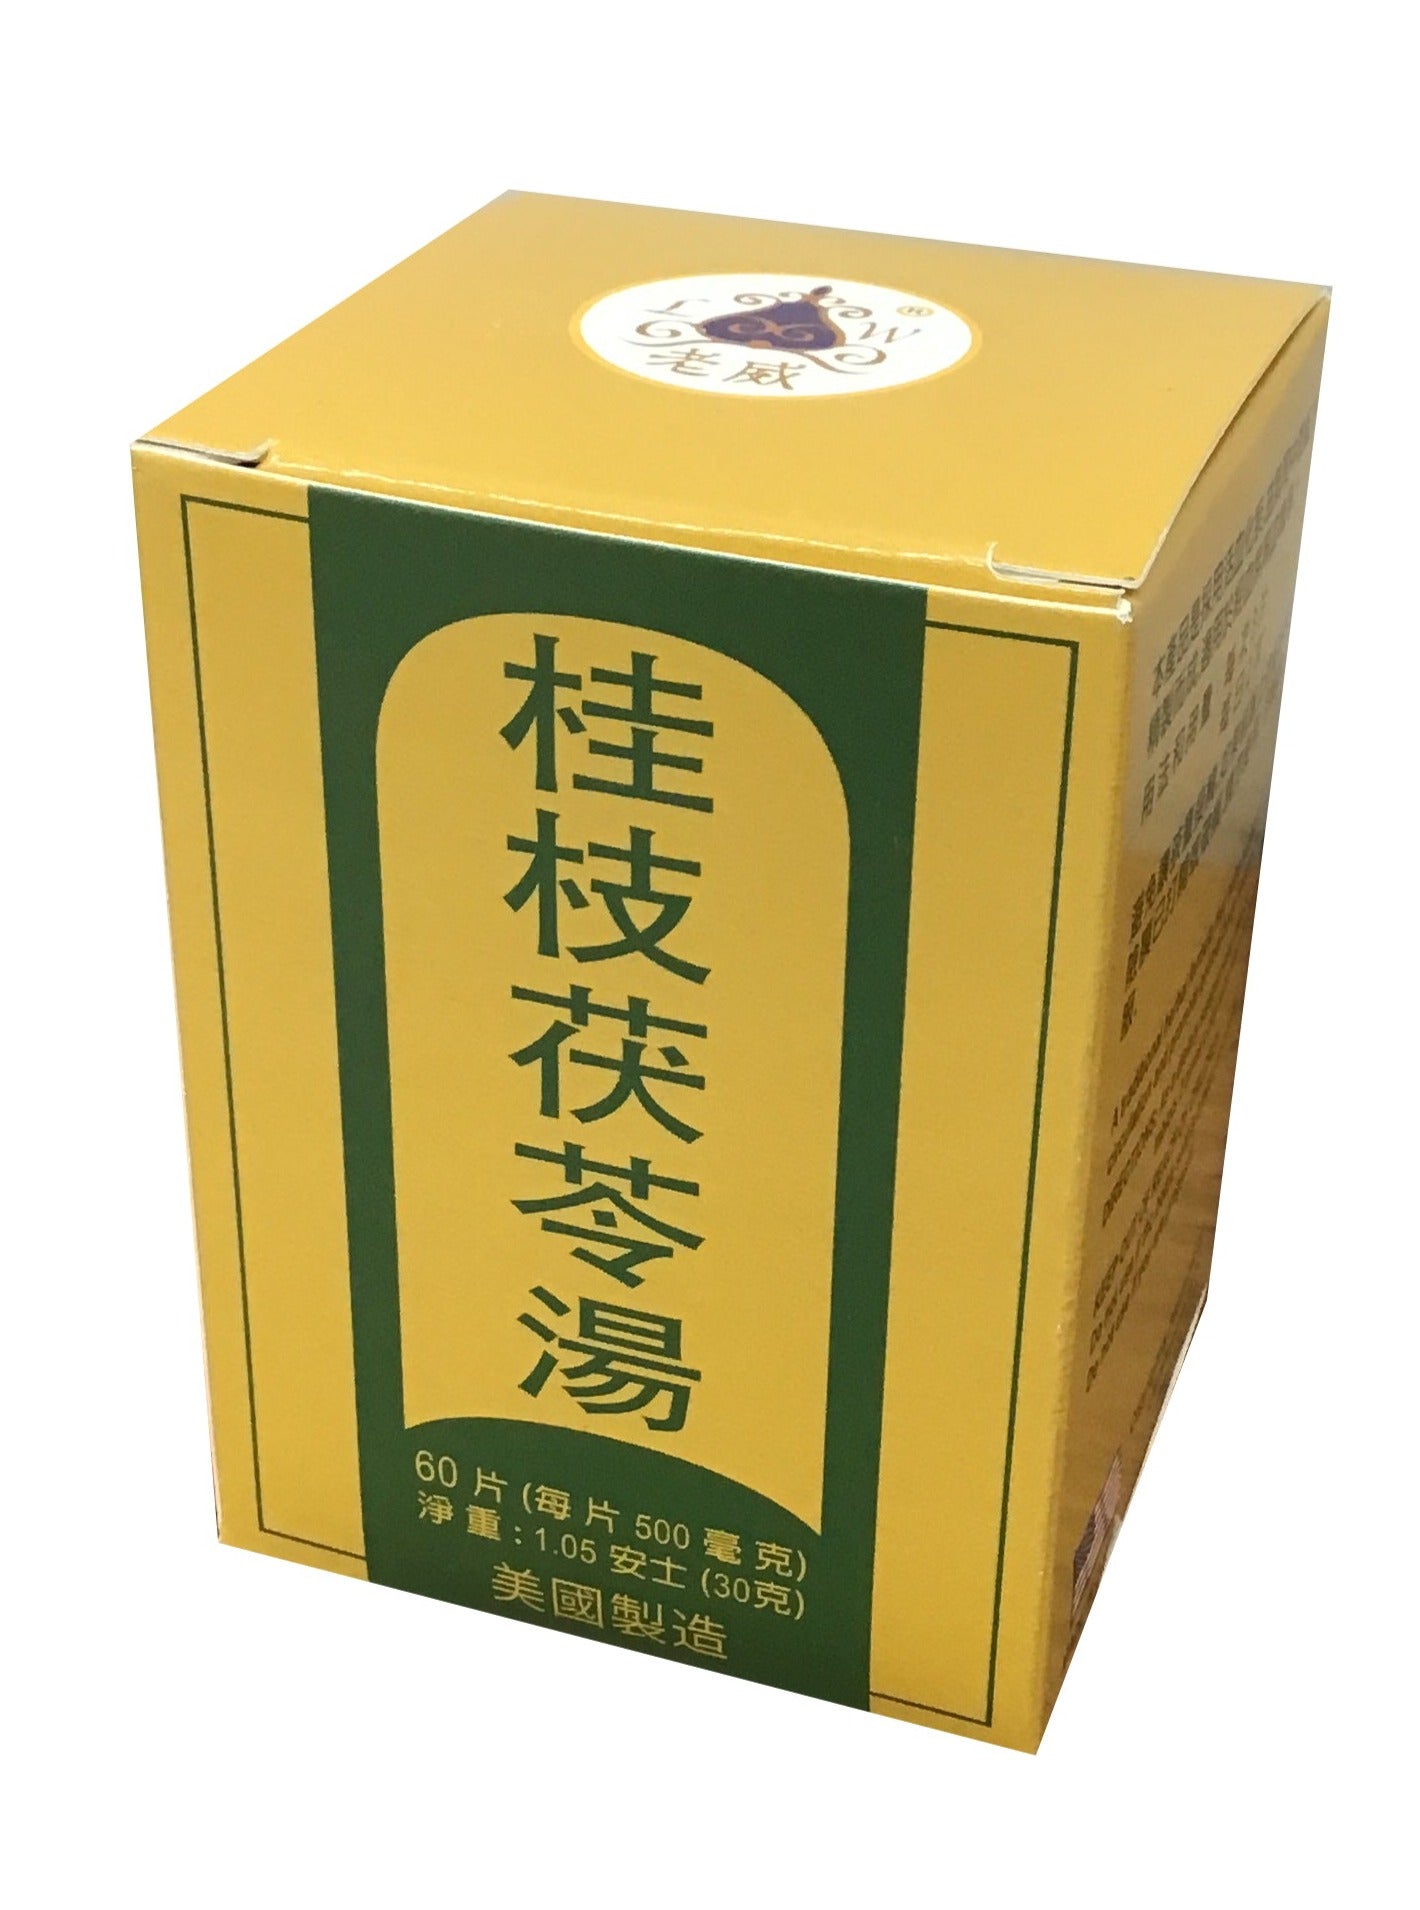 Healthy Circulation Combo - Gui Zhi Fu Ling Tang (60 Pills) 老威牌 桂枝茯苓汤 (60片)